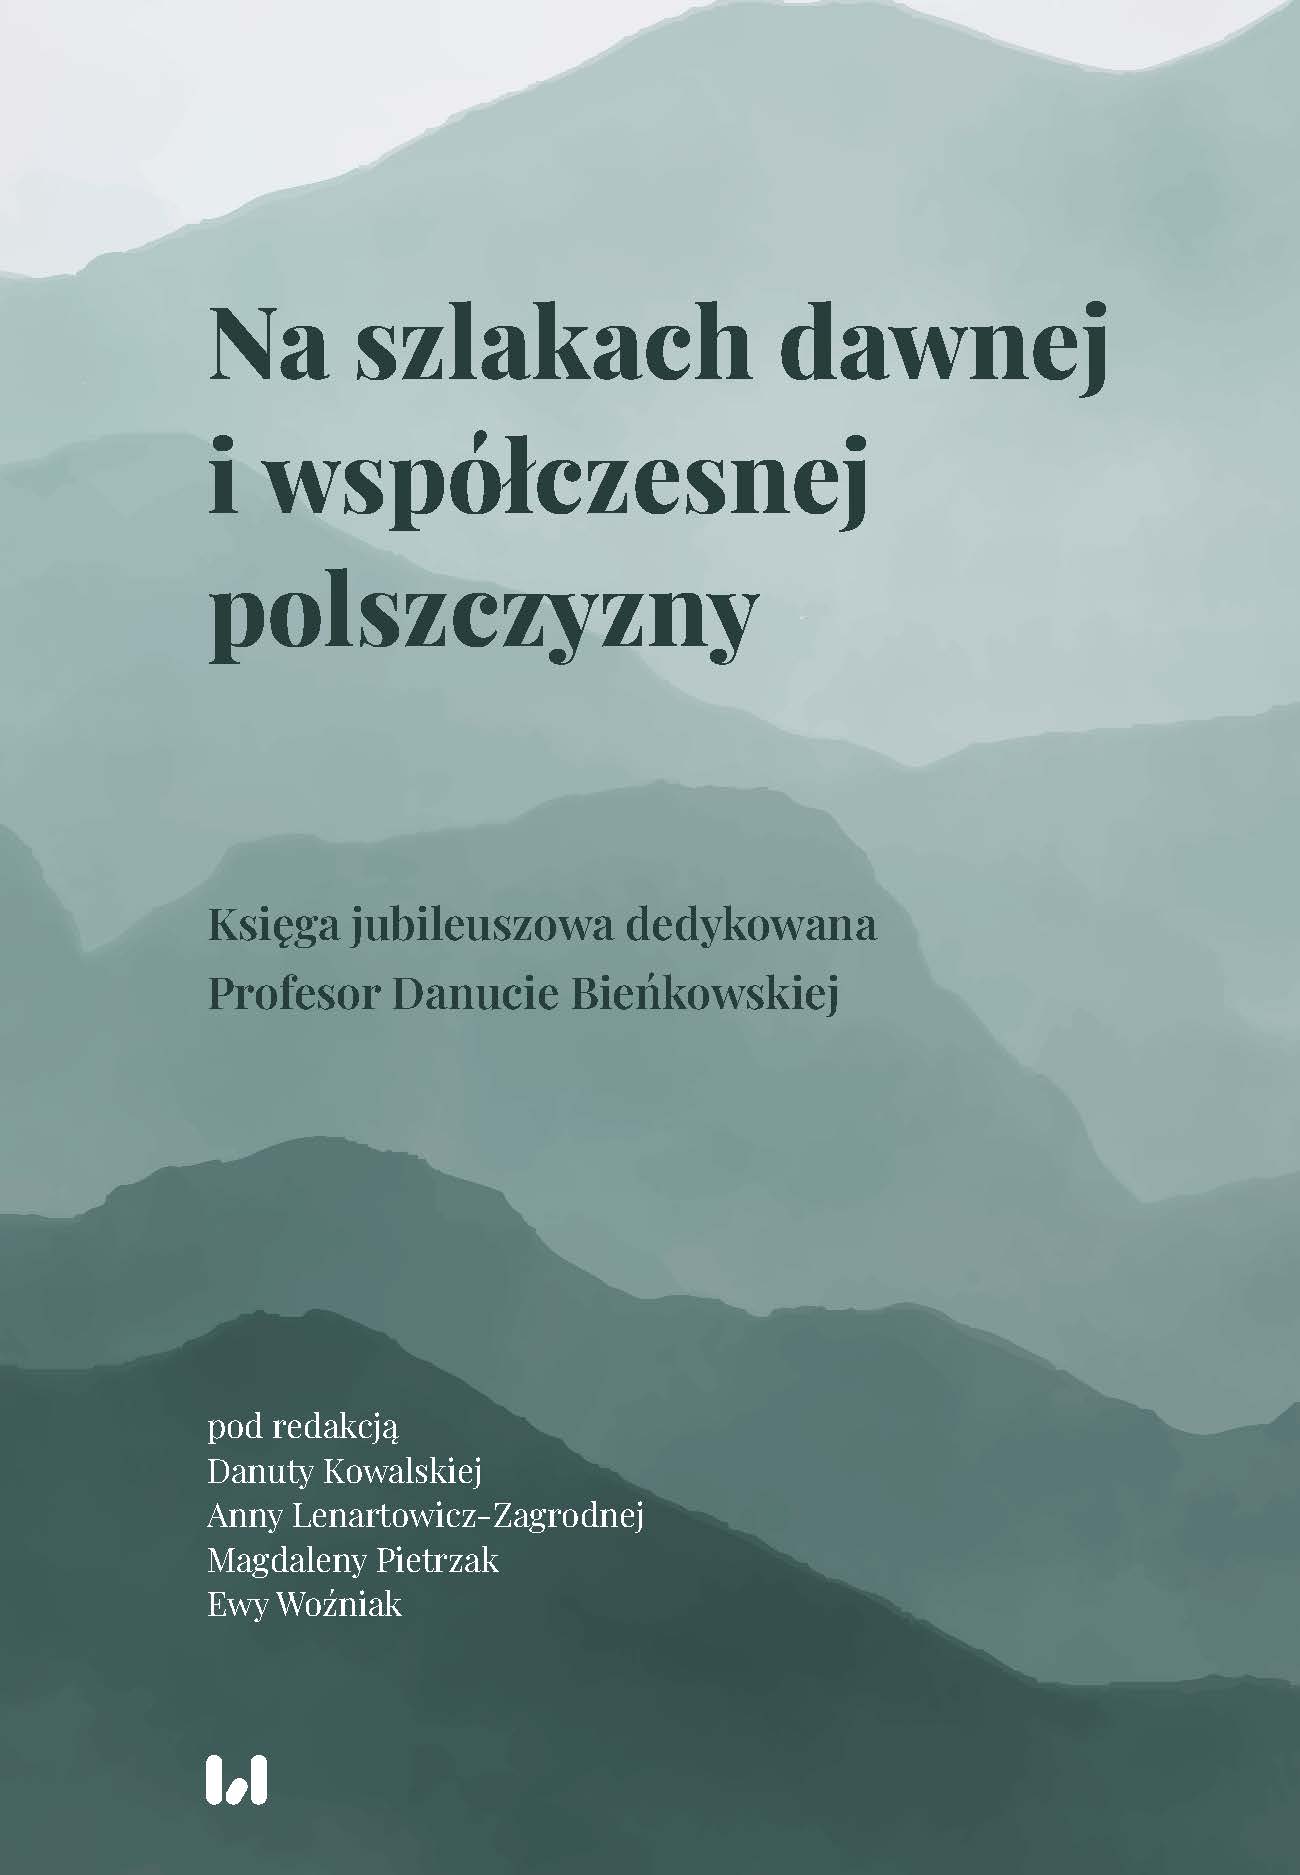 W sprawie tradycji polskiego stylu biblijnego. Biblia Paulistów (2008) wobec Biblii Tysiąclecia (1965)